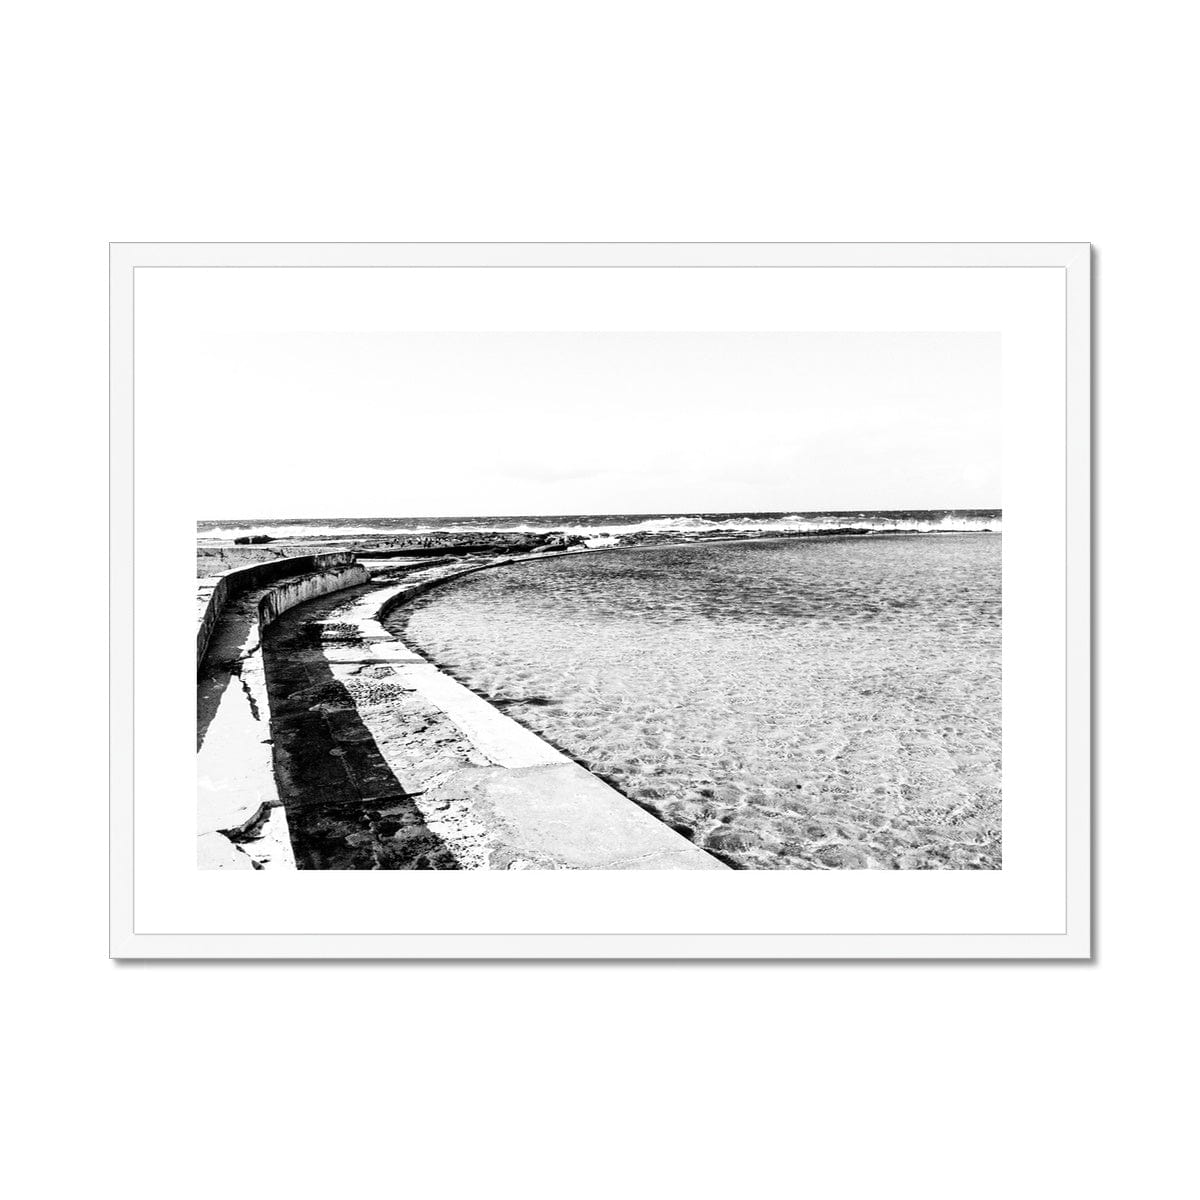 Adam Davies Framed 28"x20" / White Frame Black & White Ocean Framed Pool & Mounted Print